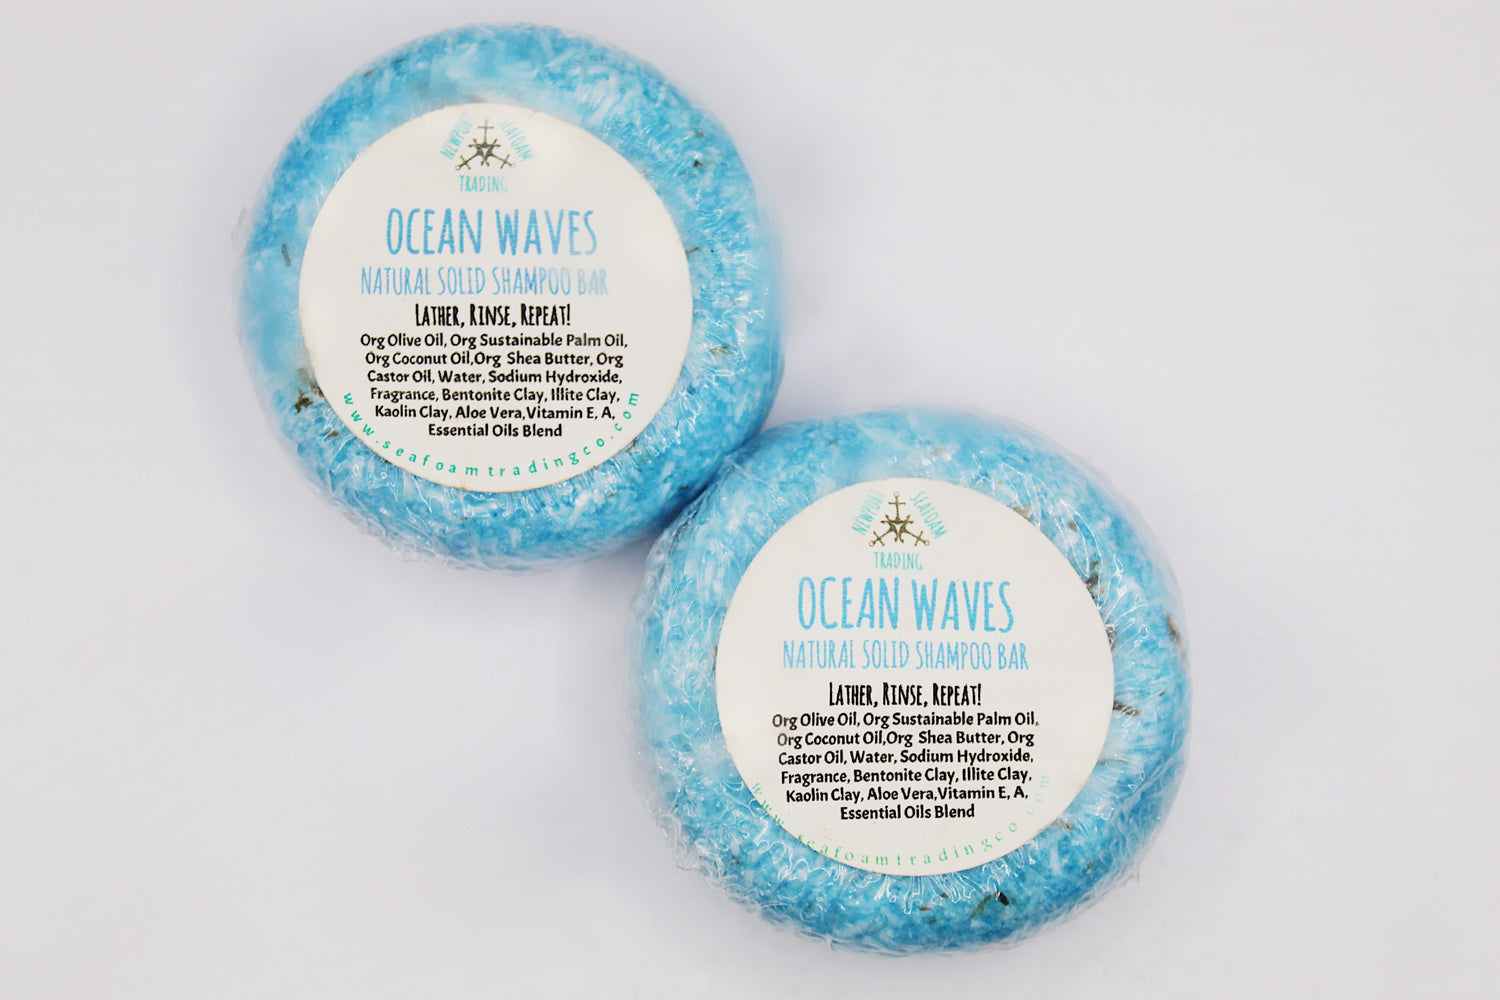 Ocean Waves Natural Solid Shampoo Bar